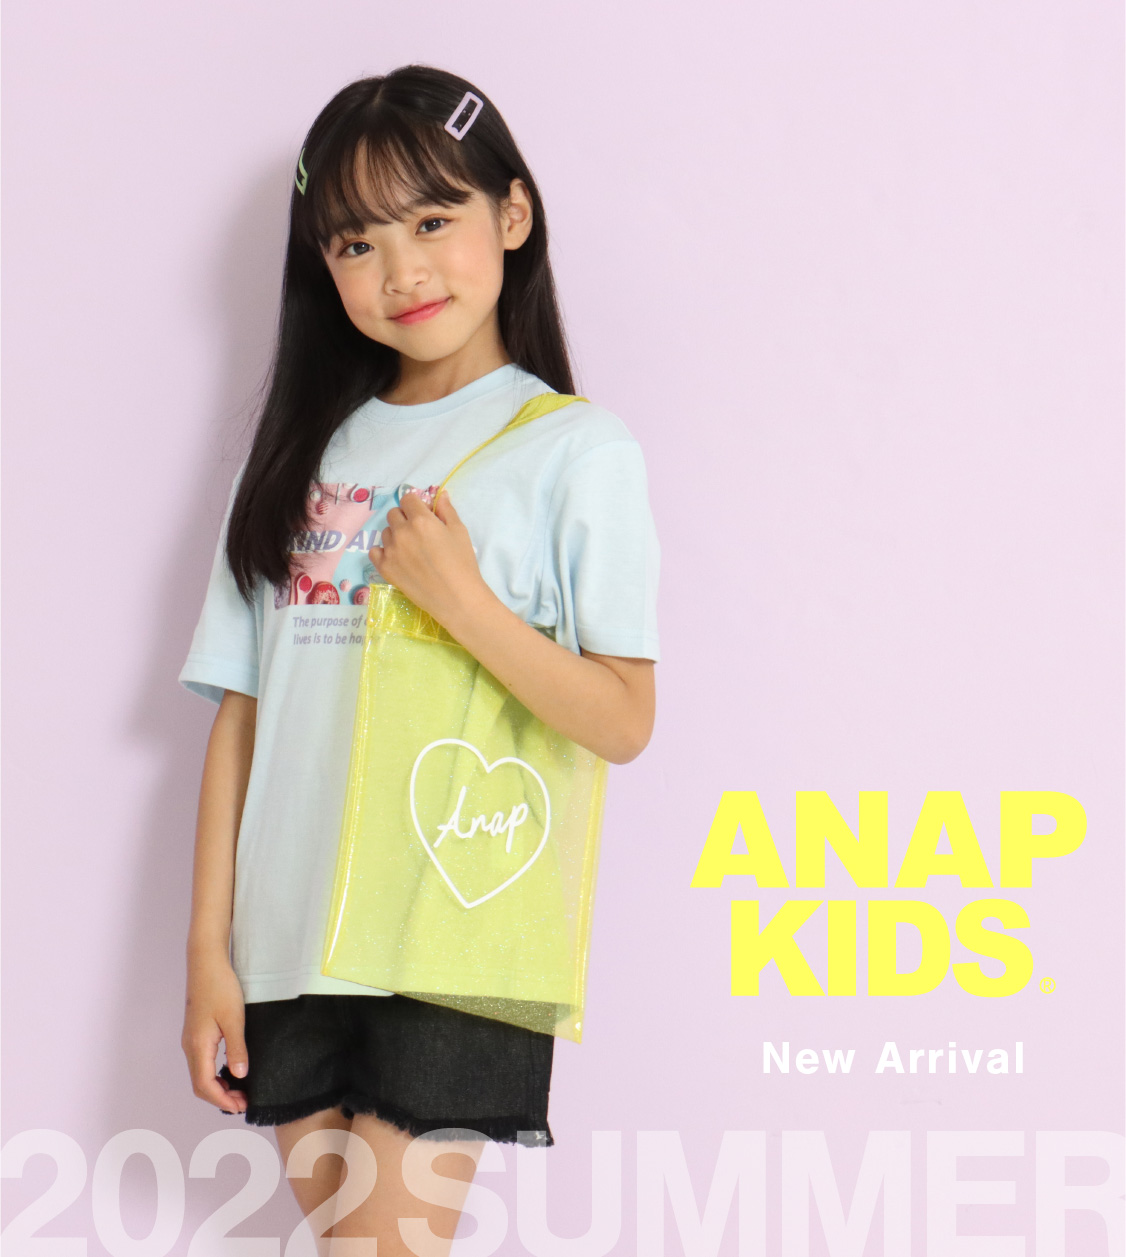 ANAP KIDS |レディースファッション通販ANAPオンライン